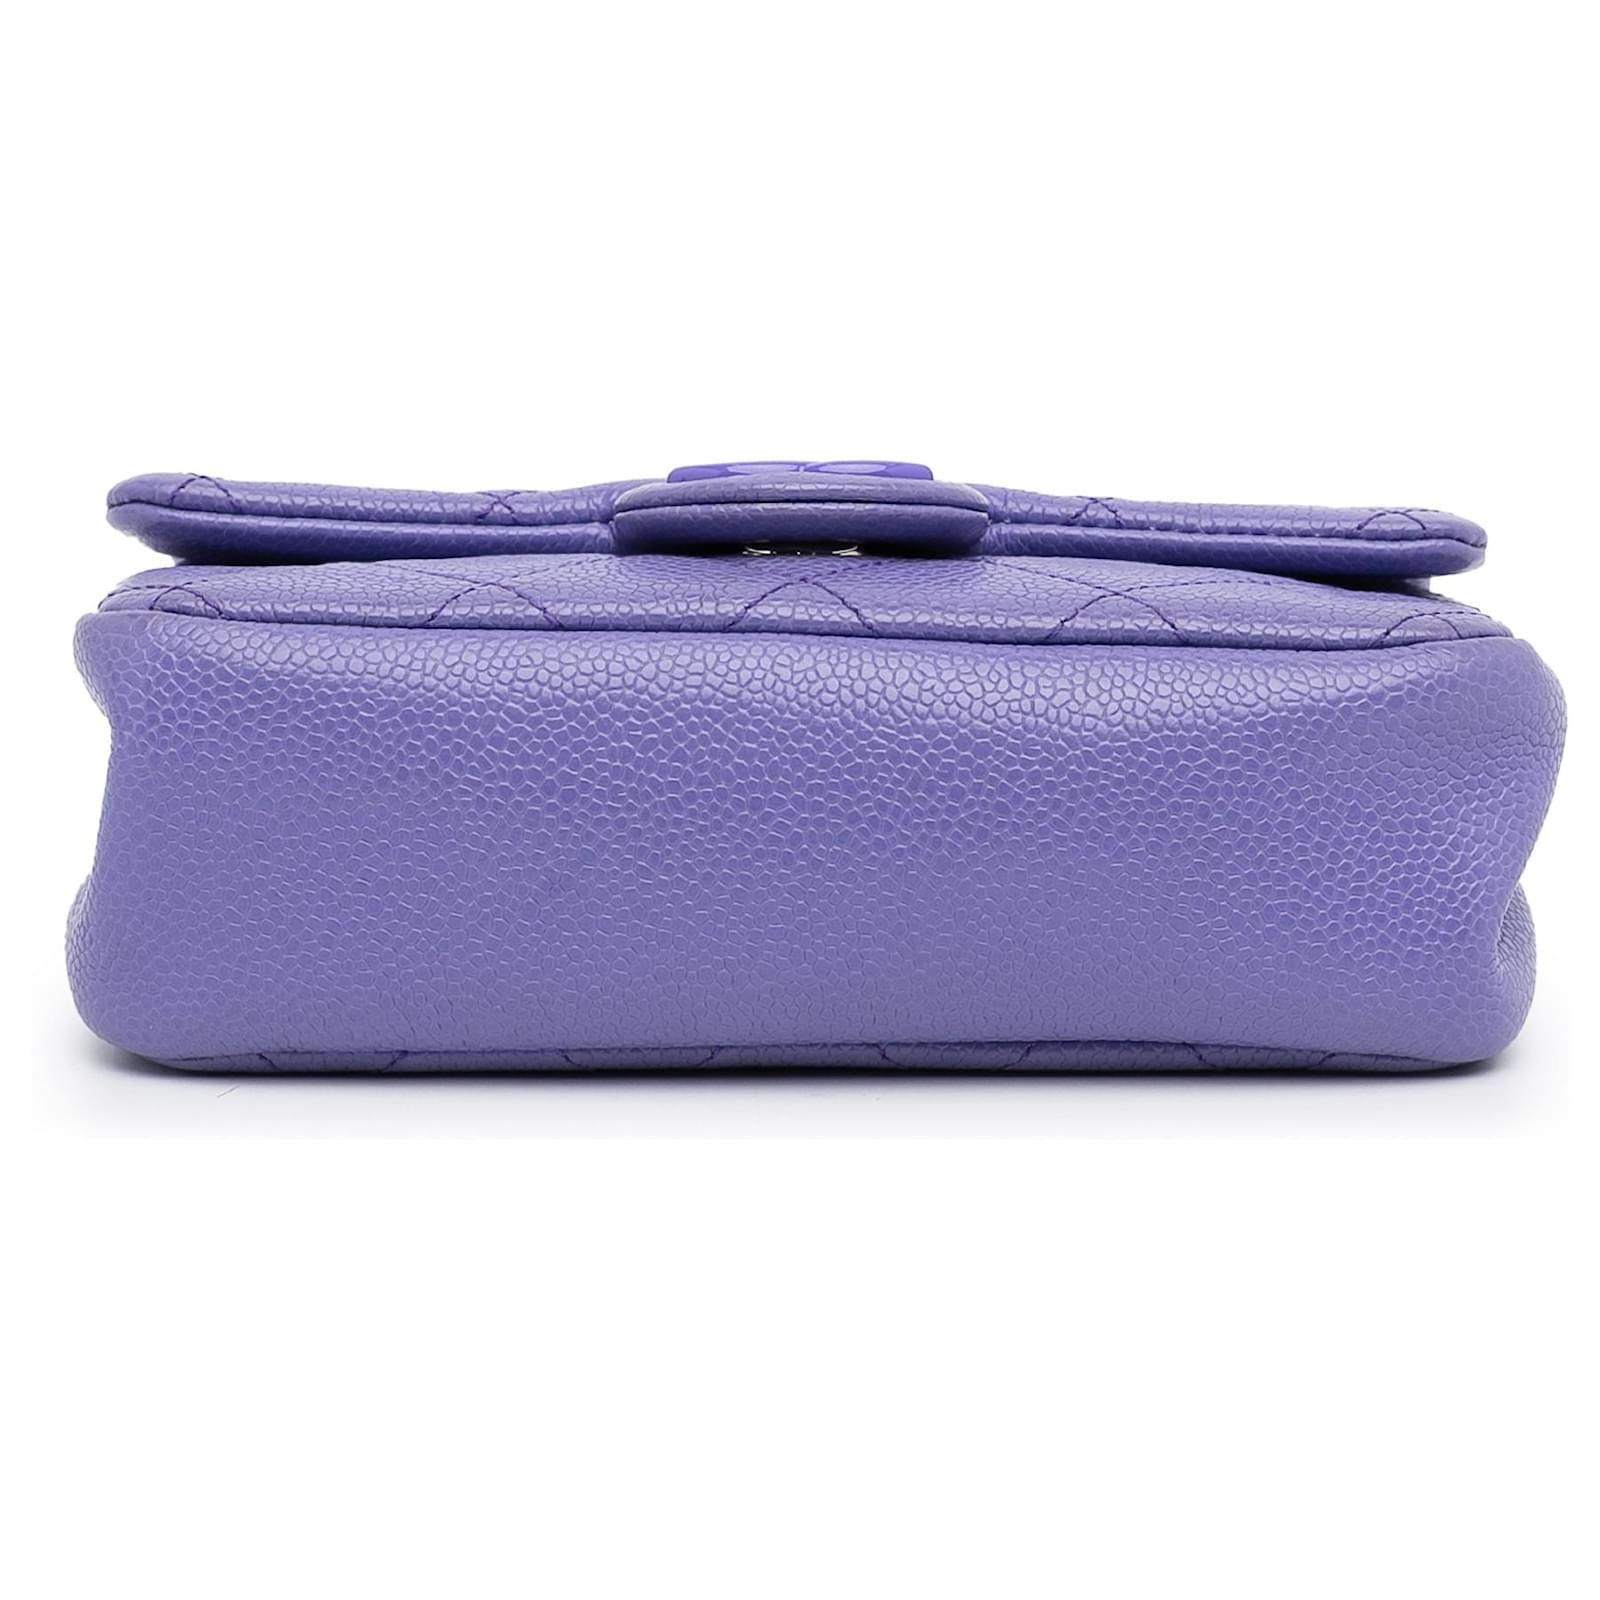 Chanel Purple Incognito Square Flap Bag